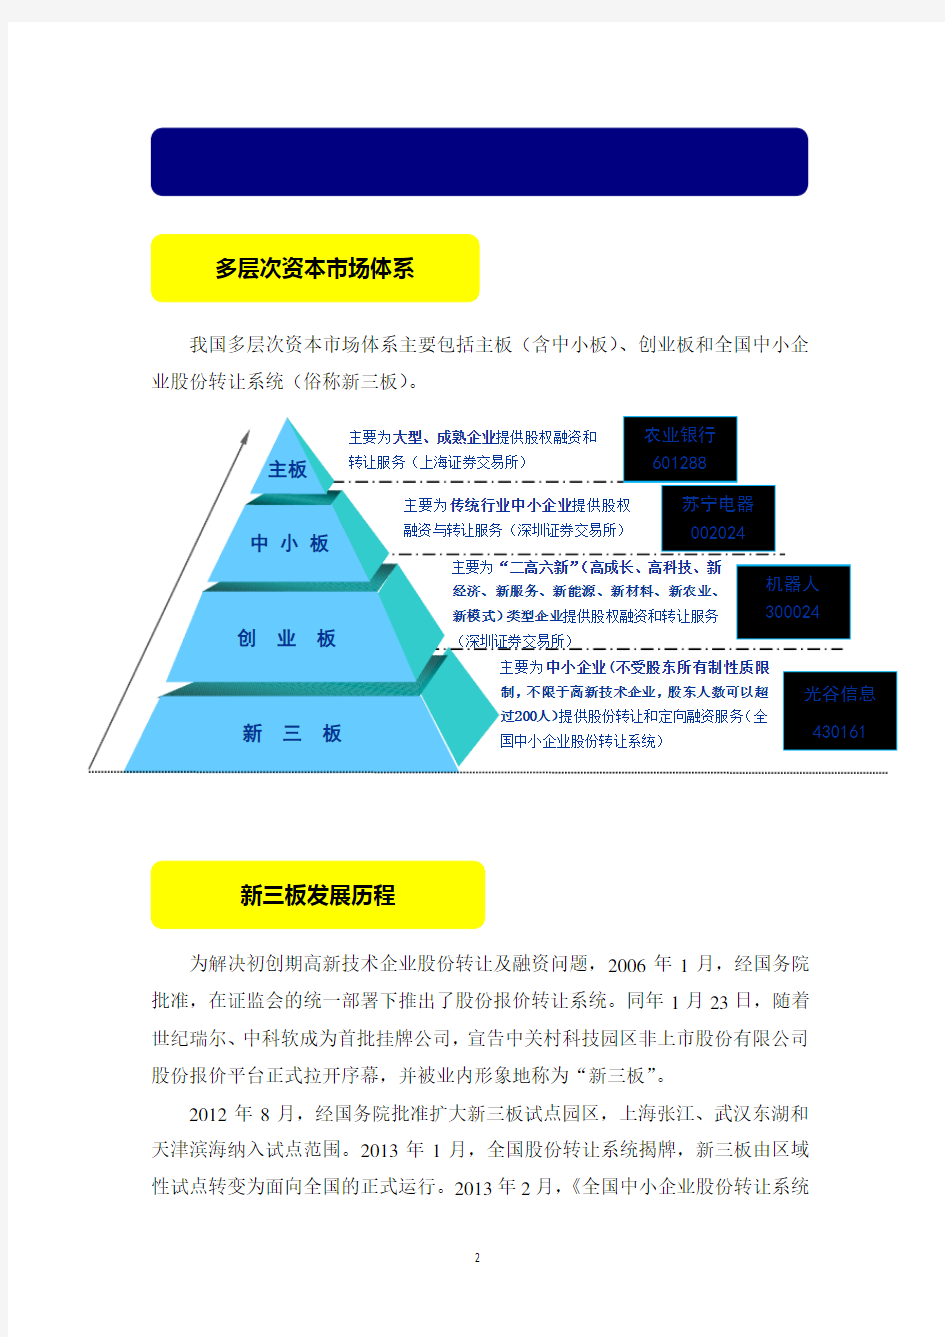 新三板宣传材料(简化版 2014.5.12)